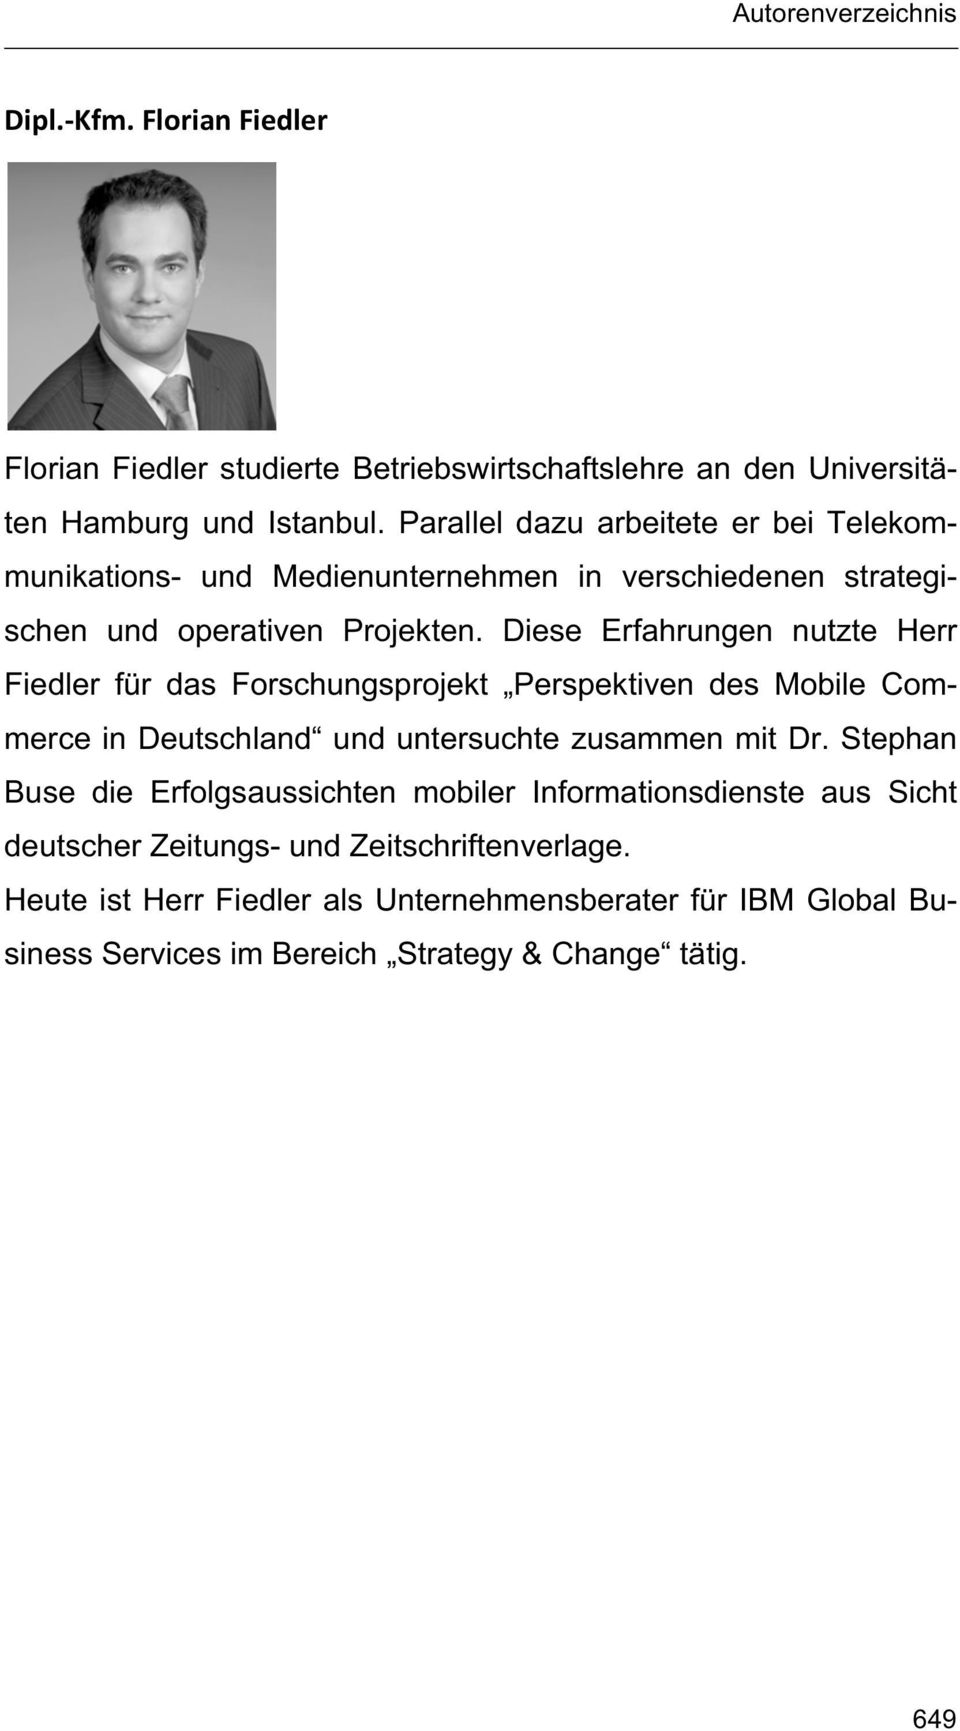 Diese Erfahrungen nutzte Herr Fiedler für das Forschungsprojekt Perspektiven des Mobile Commerce in Deutschland und untersuchte zusammen mit Dr.